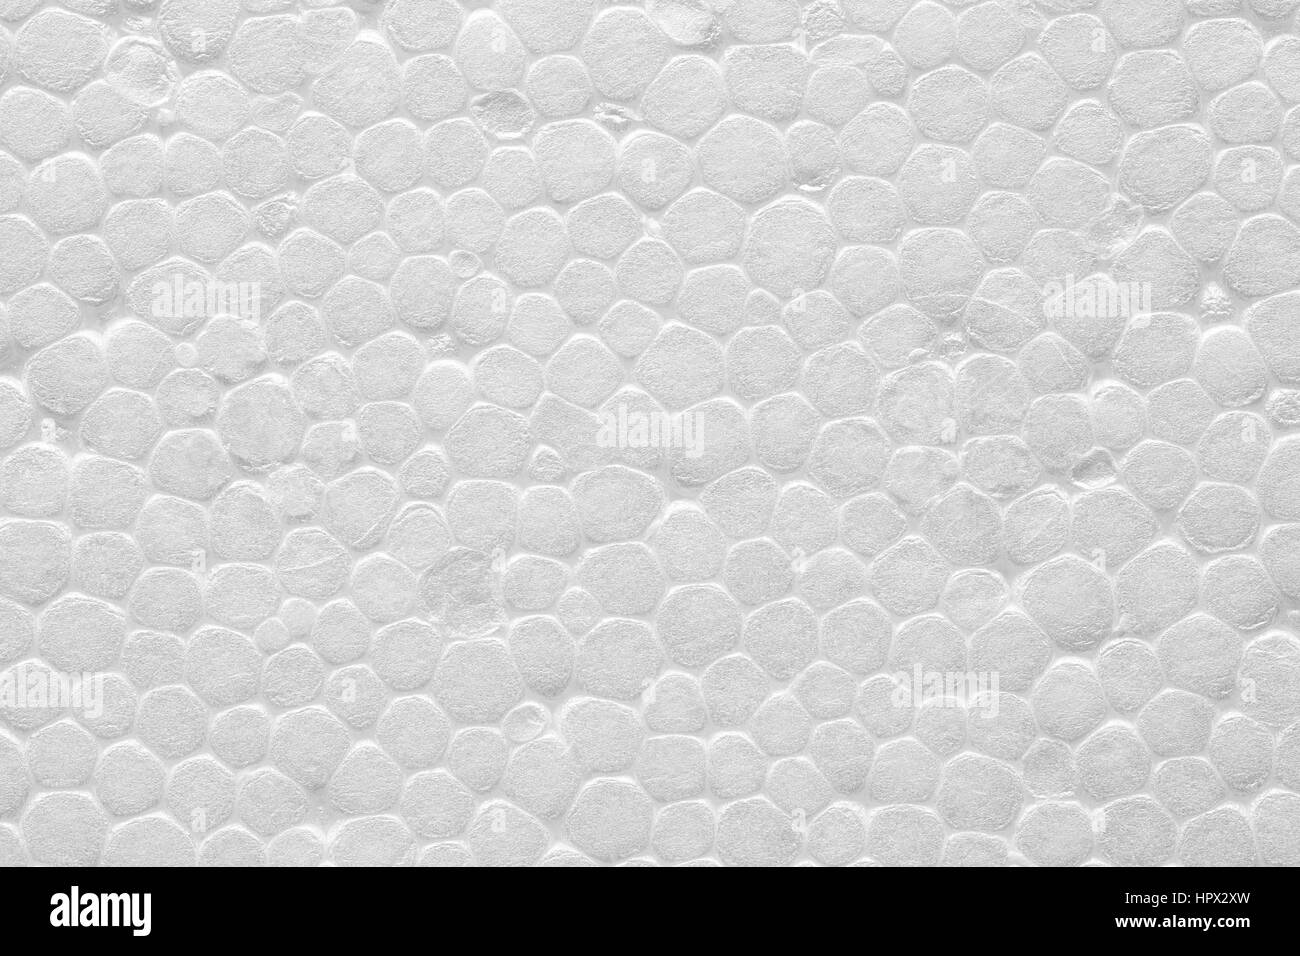 White Polystyrene or styrofoam texture background. Styrofoam board